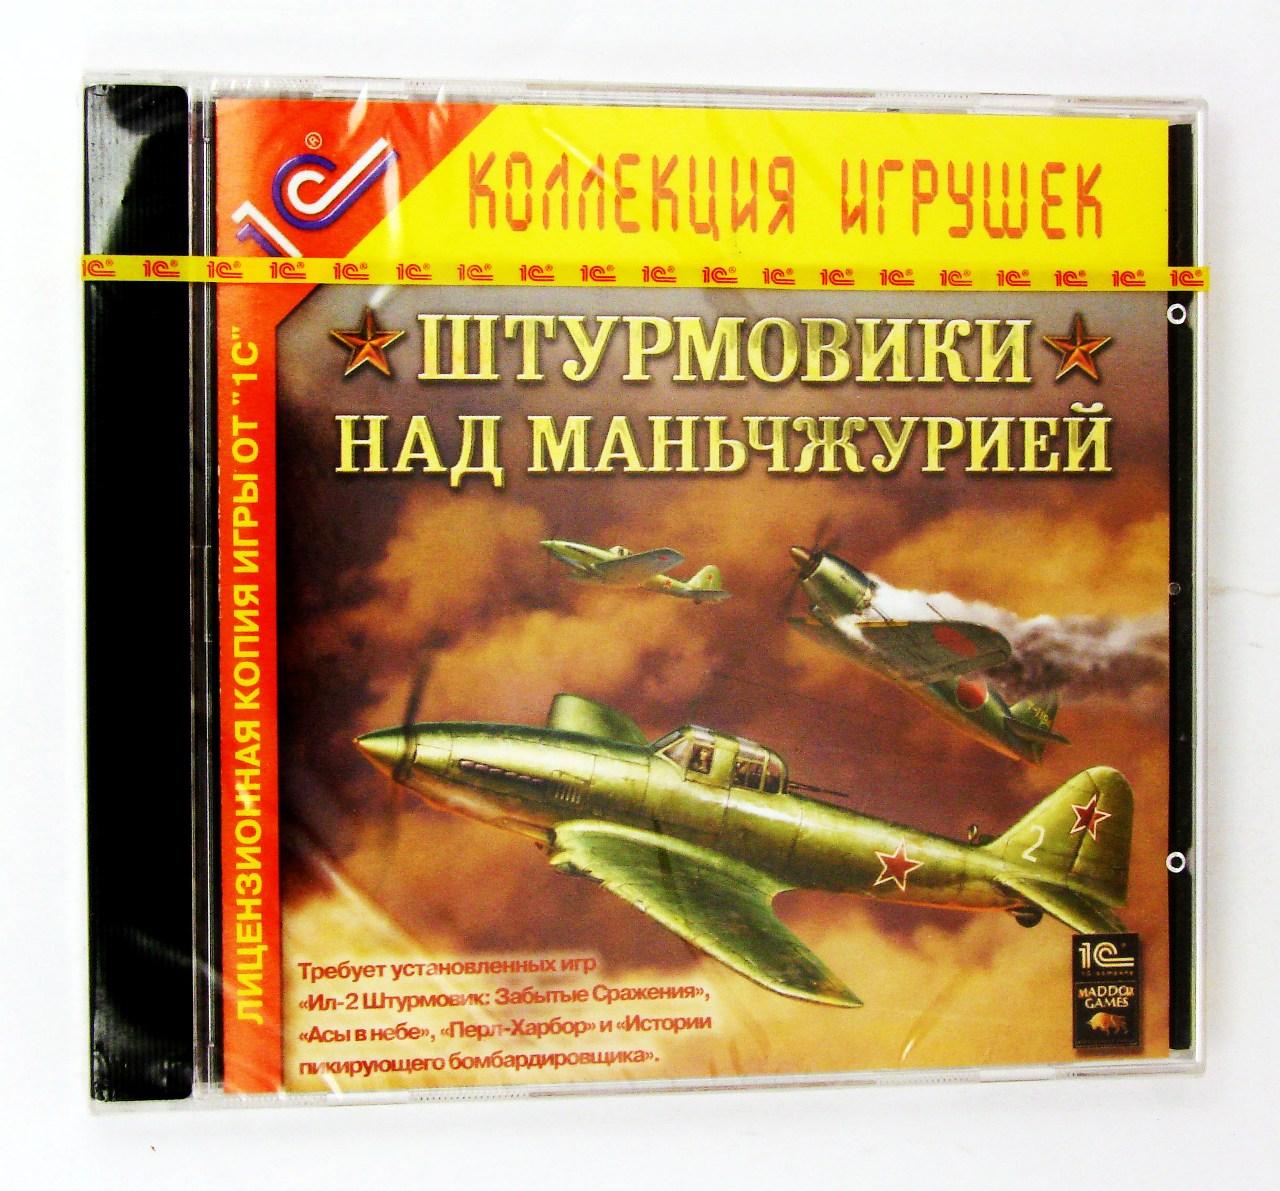 Компьютерный компакт-диск Штурмовики над Маньчжурией (Дополнение к Ил-2) (ПК), фирма "1C", 1 CD